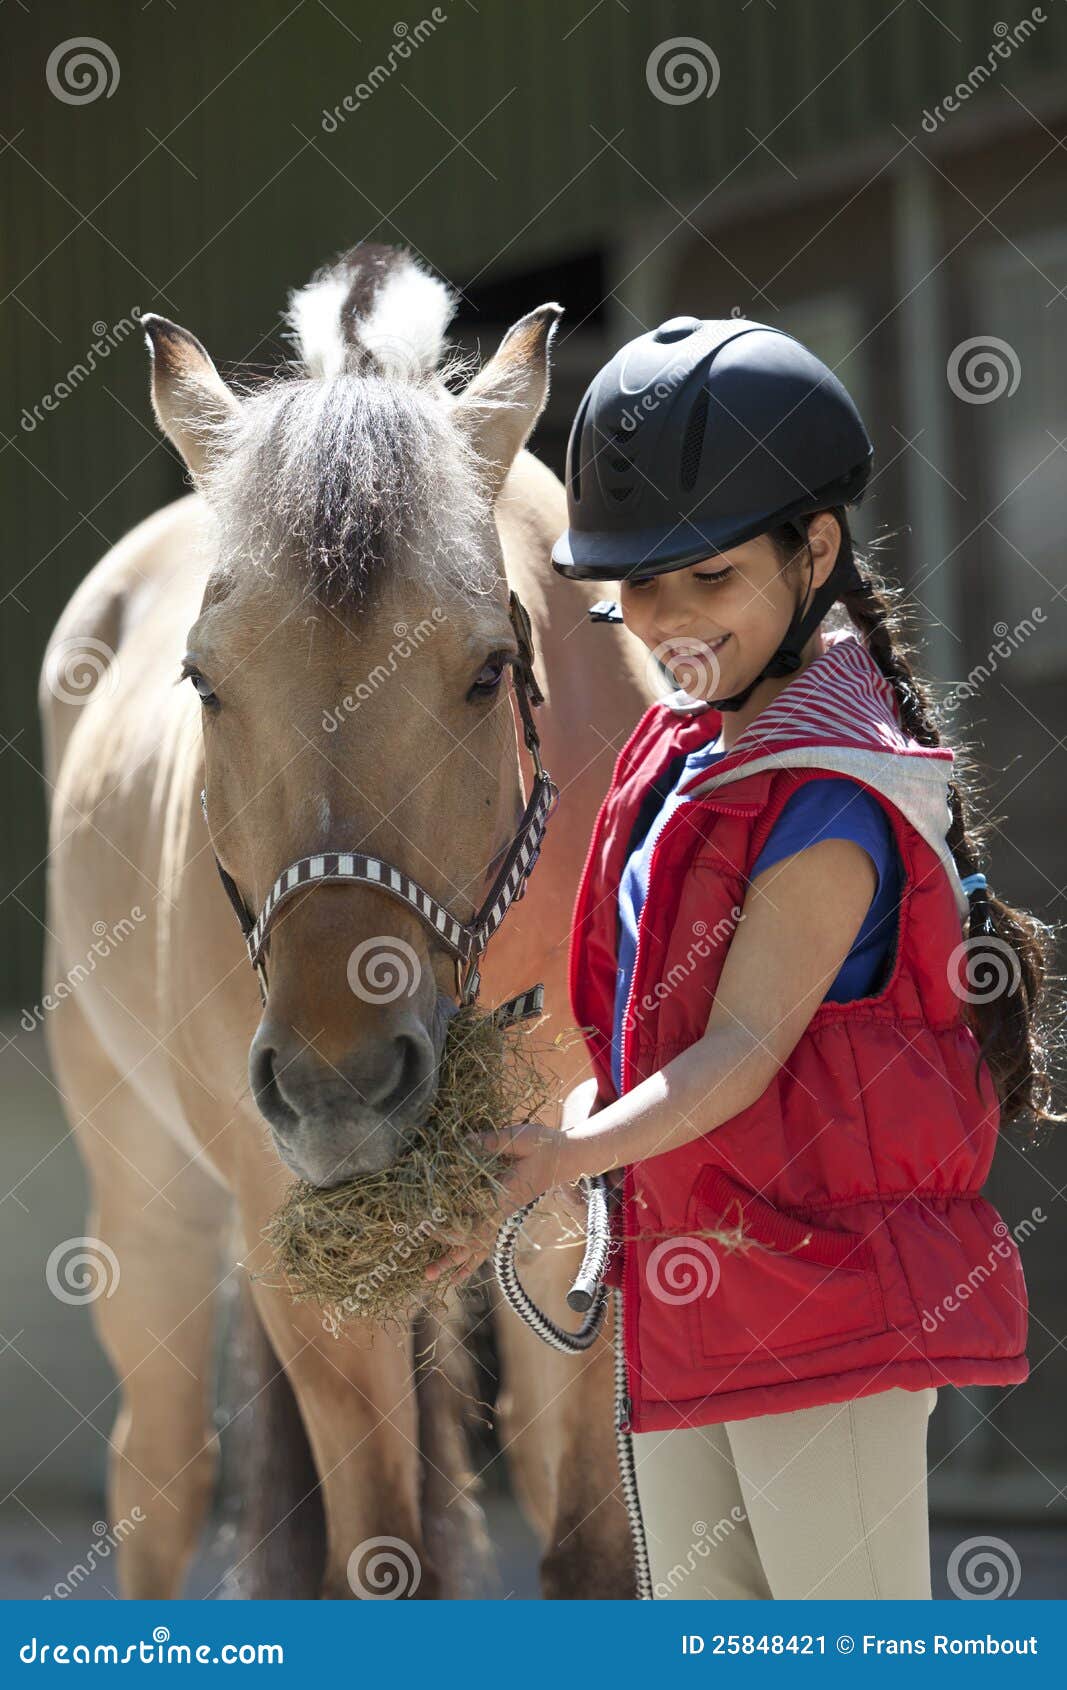 little girl feeding her favorite horse some hay